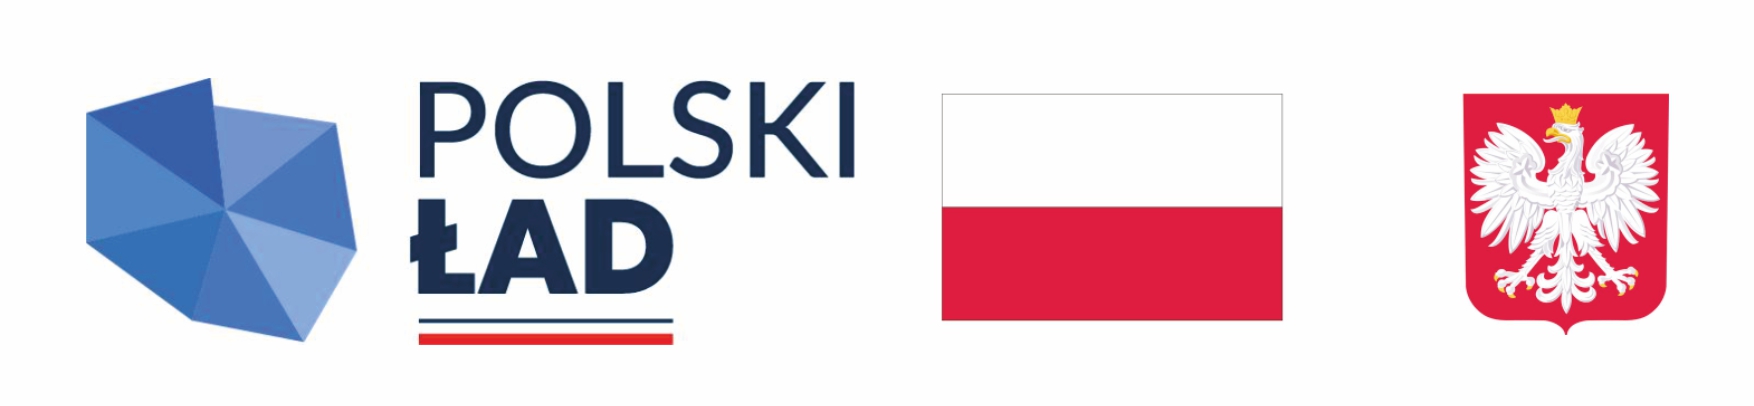 logotyp polski ład: nazwa dofinansowania, flaga i godło Polski